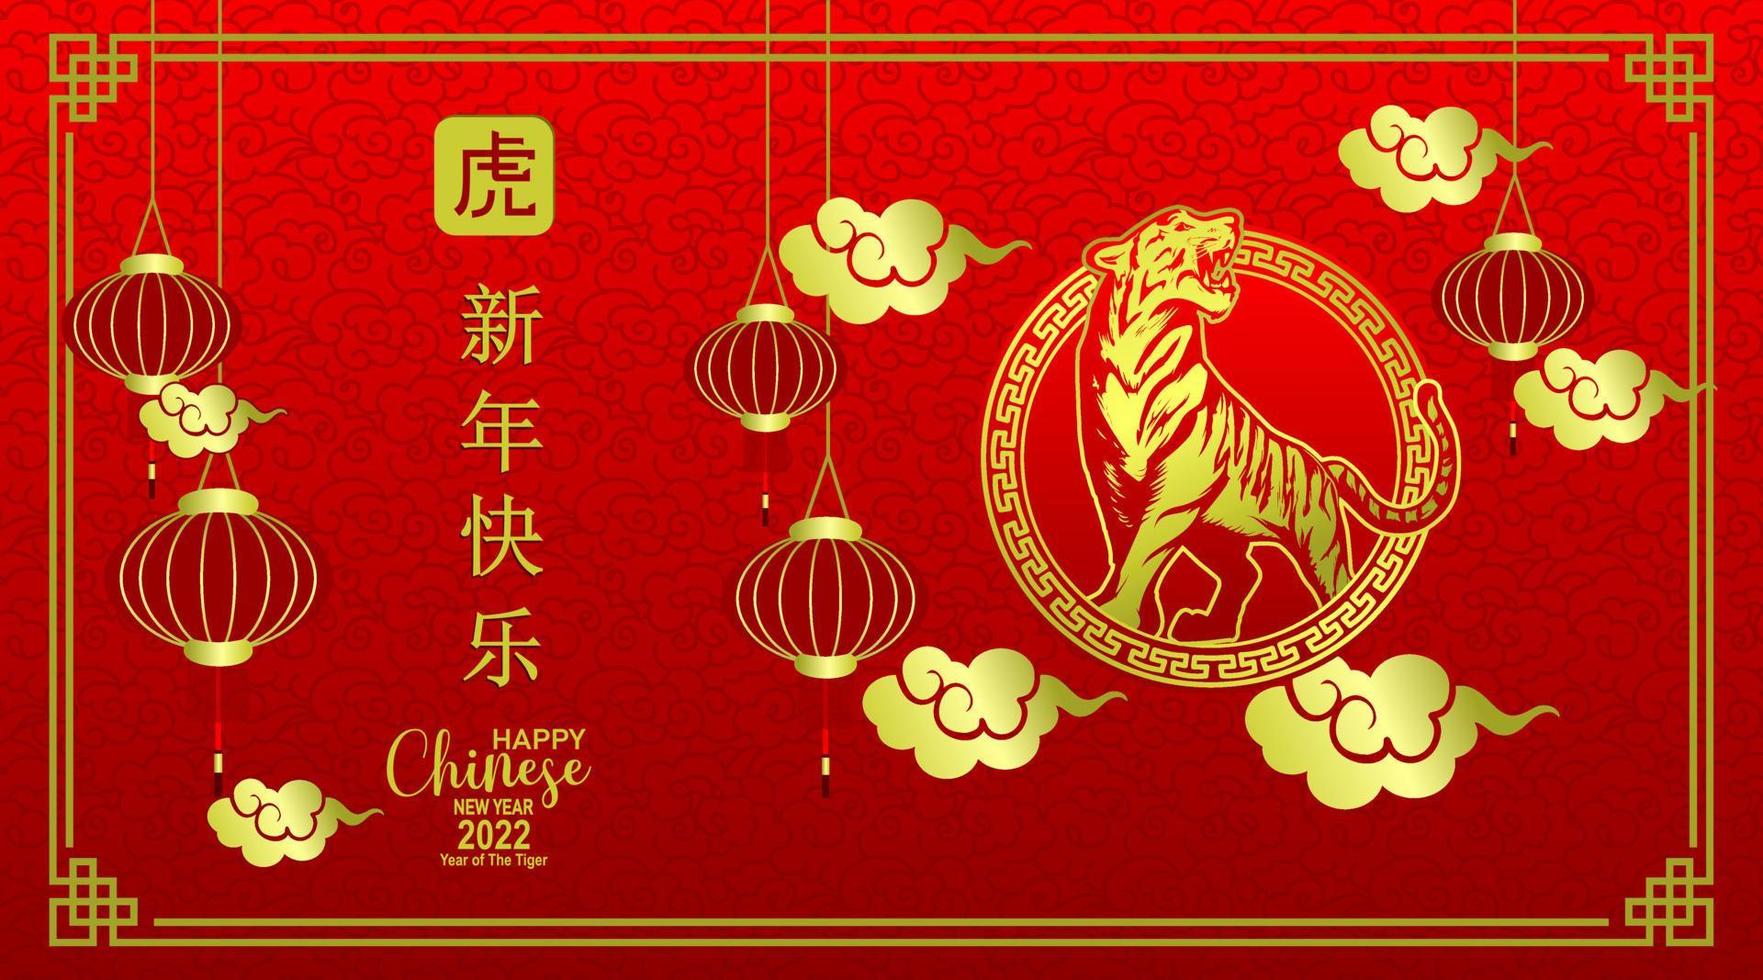 ano novo chinês 2022 ano do vetor de fundo vermelho tigre. tigre e lâmpada chinesa, fundo de tema vermelho festivo.